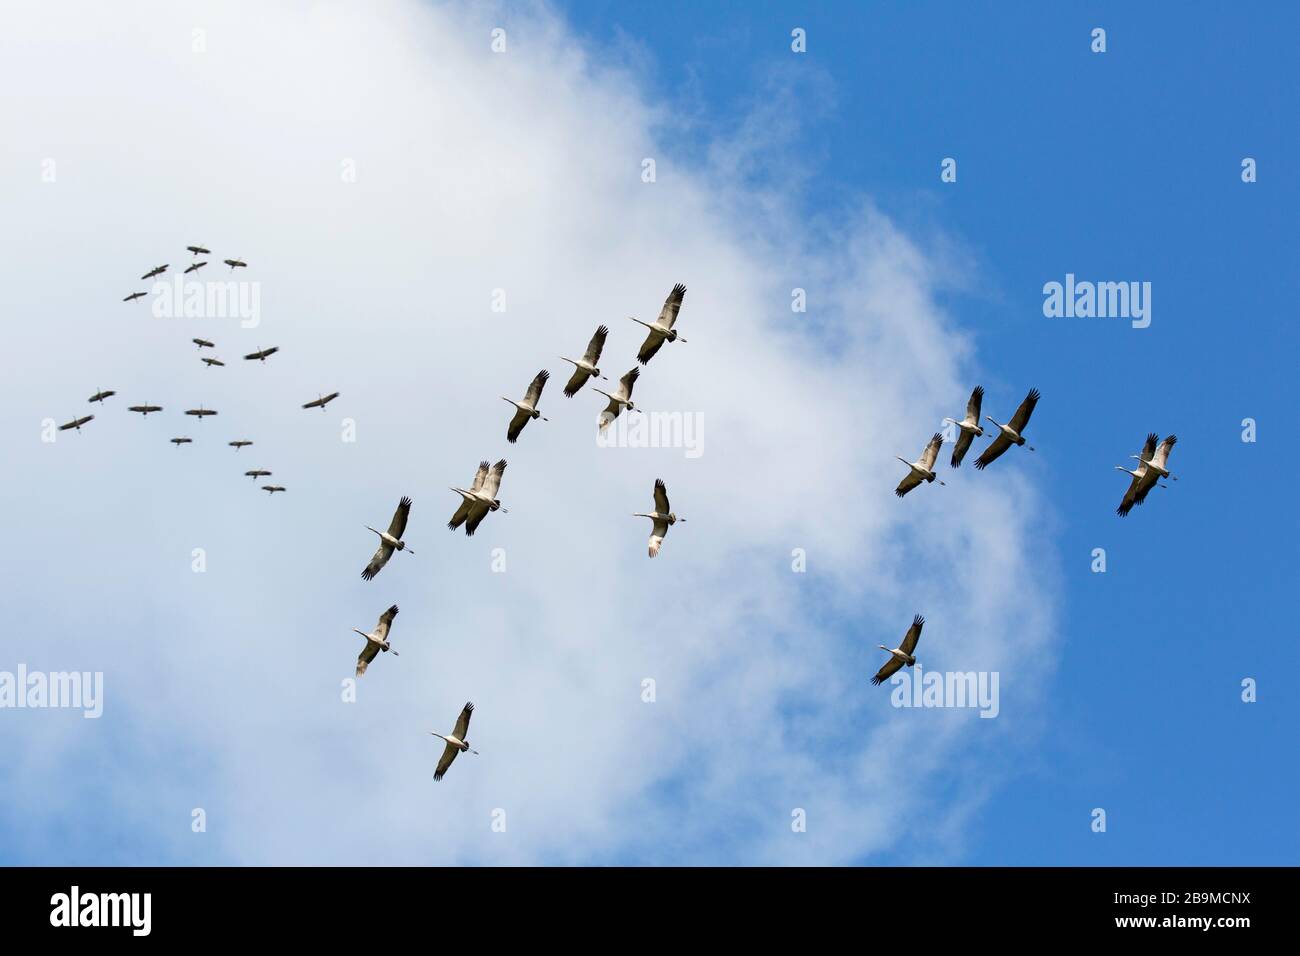 Große wandernde Schar von gemeinen Kränen / Eurasischer Kran (Grus Grus) fliegend / thermisch hoch gegen bewölkten Himmel während der Migration Stockfoto